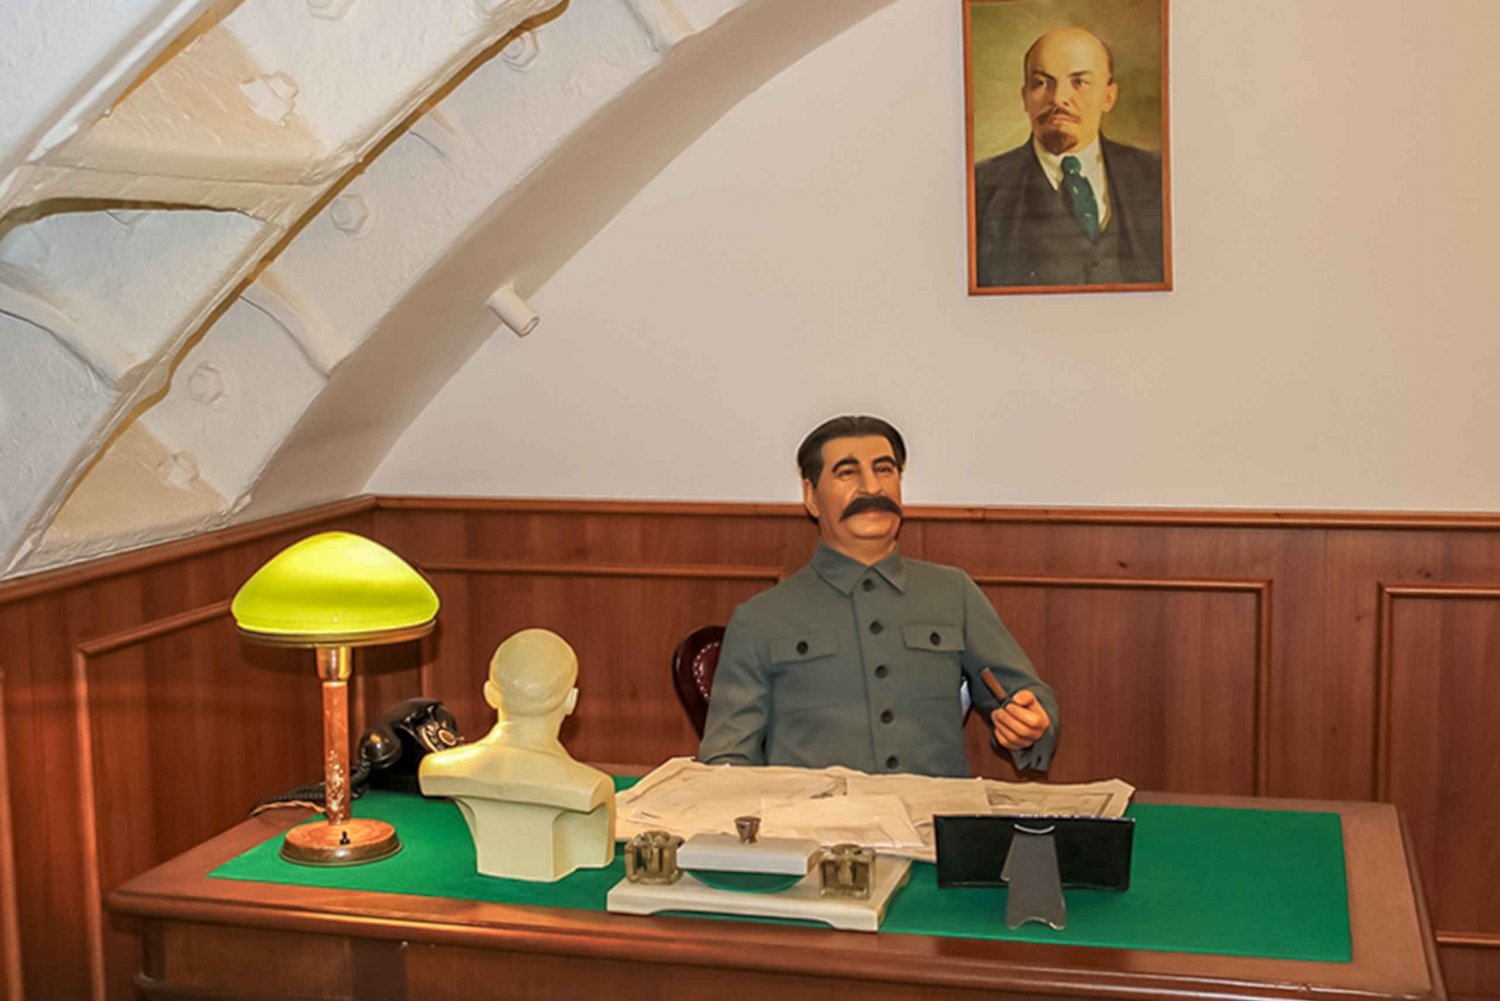 Каб 42. Бункер Сталина 42. Бункер-42 на Таганке кабинет Сталина. Музей бункер Сталина в Измайлово. Бункер - 42 комната Сталина.